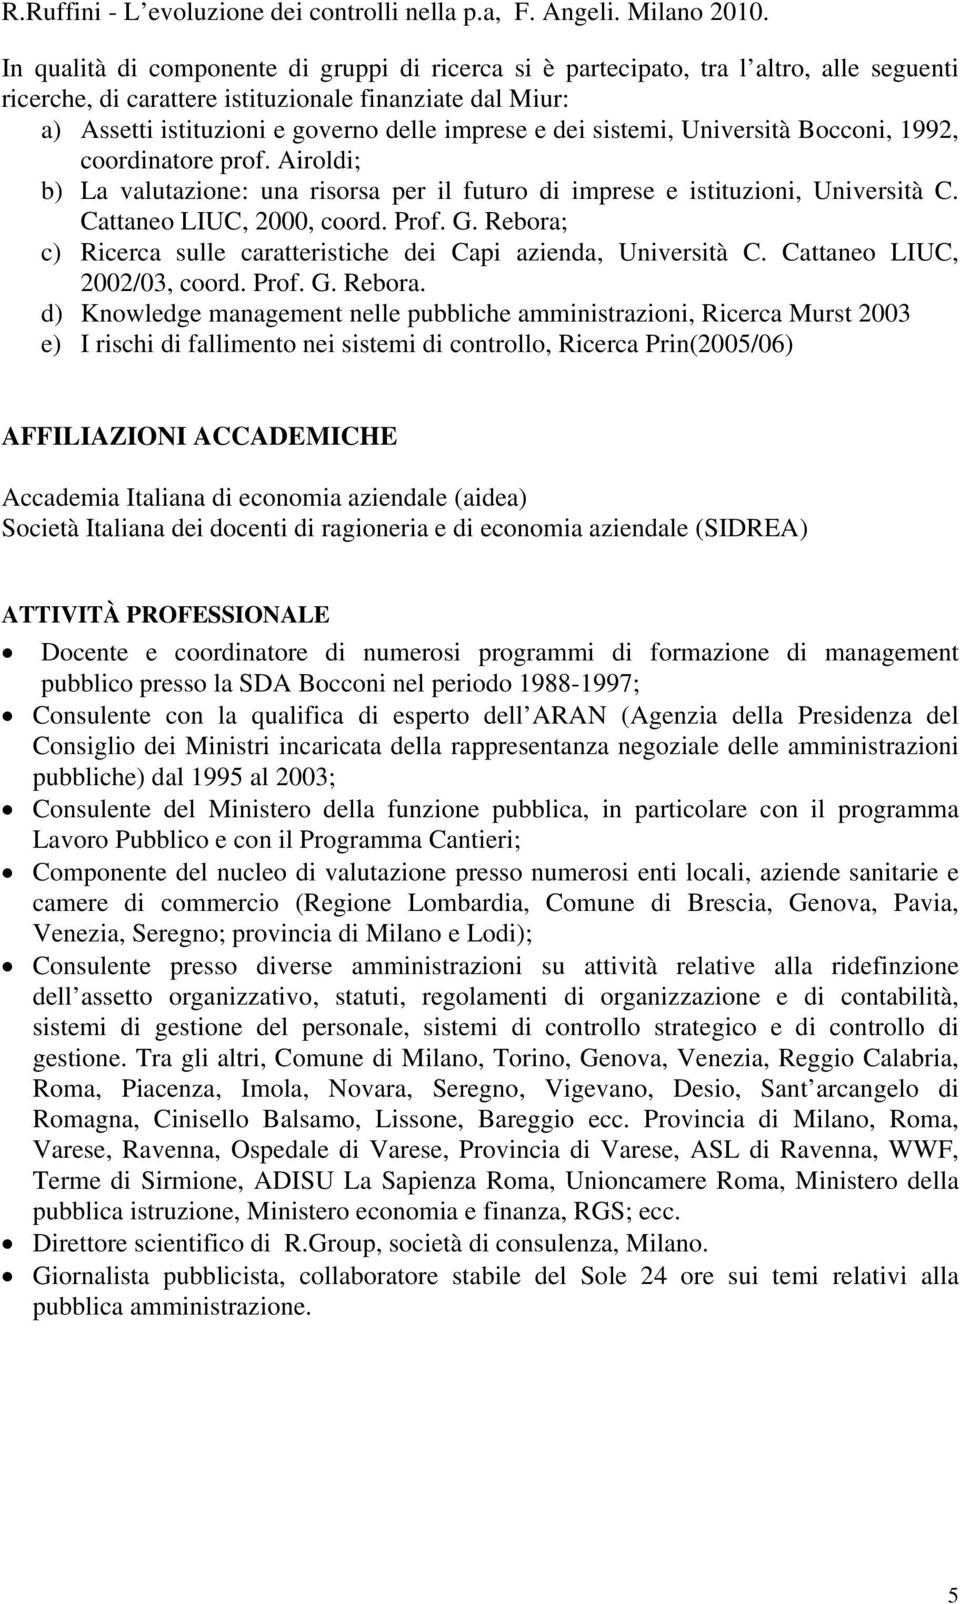 dei sistemi, Università Bocconi, 1992, coordinatore prof. Airoldi; b) La valutazione: una risorsa per il futuro di imprese e istituzioni, Università C. Cattaneo LIUC, 2000, coord. Prof. G.